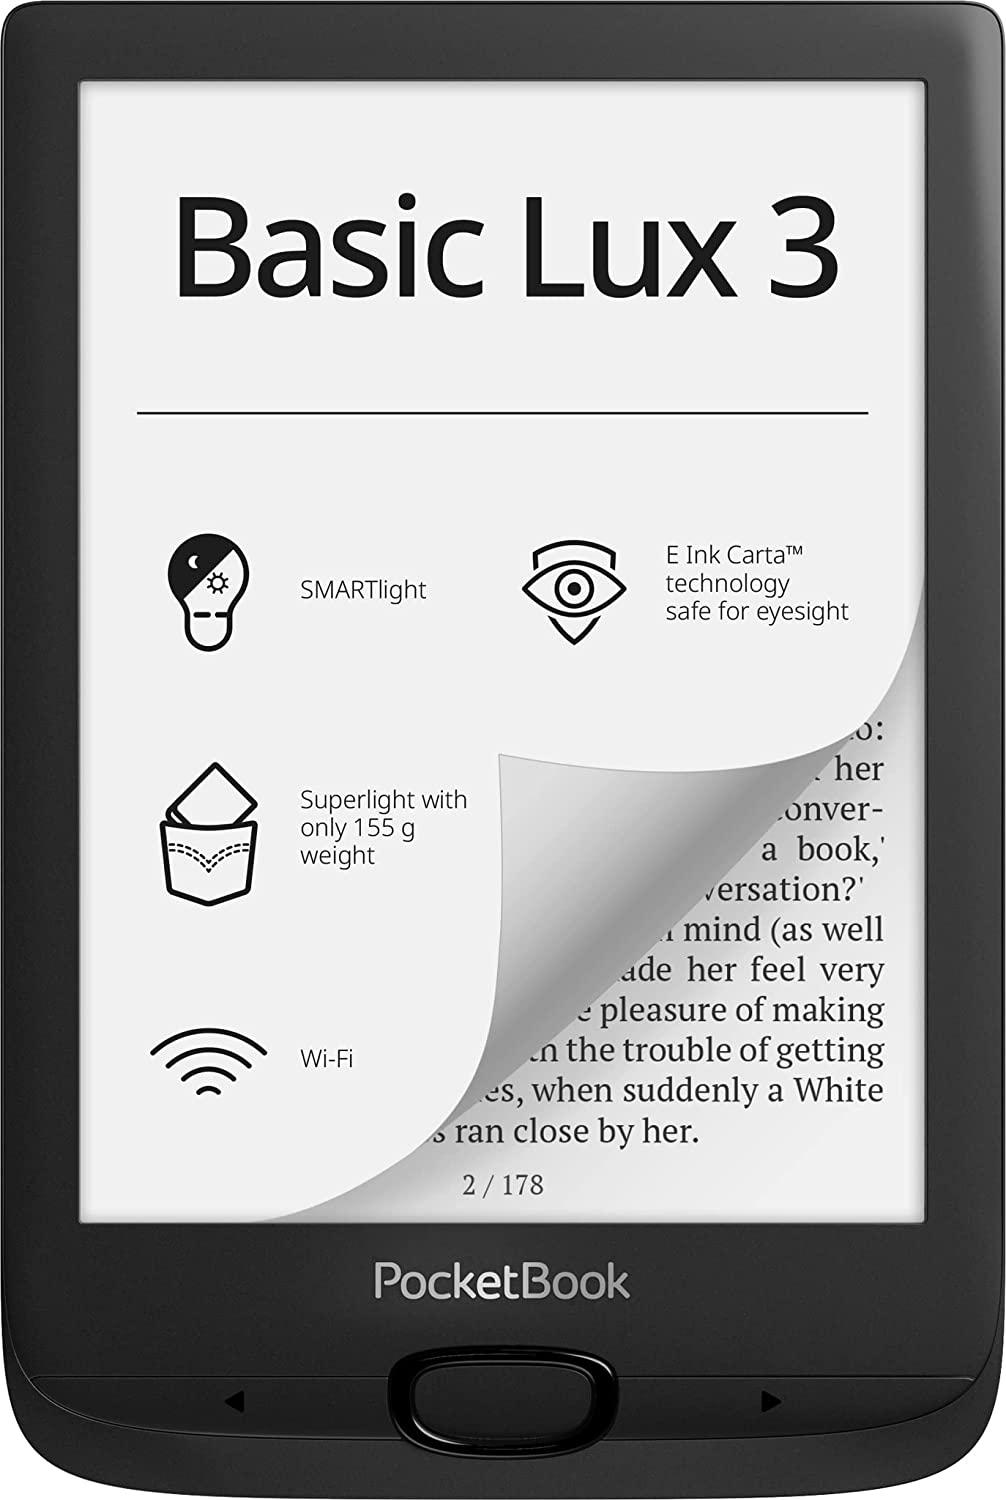 PocketBook Basic Lux 3 Ink